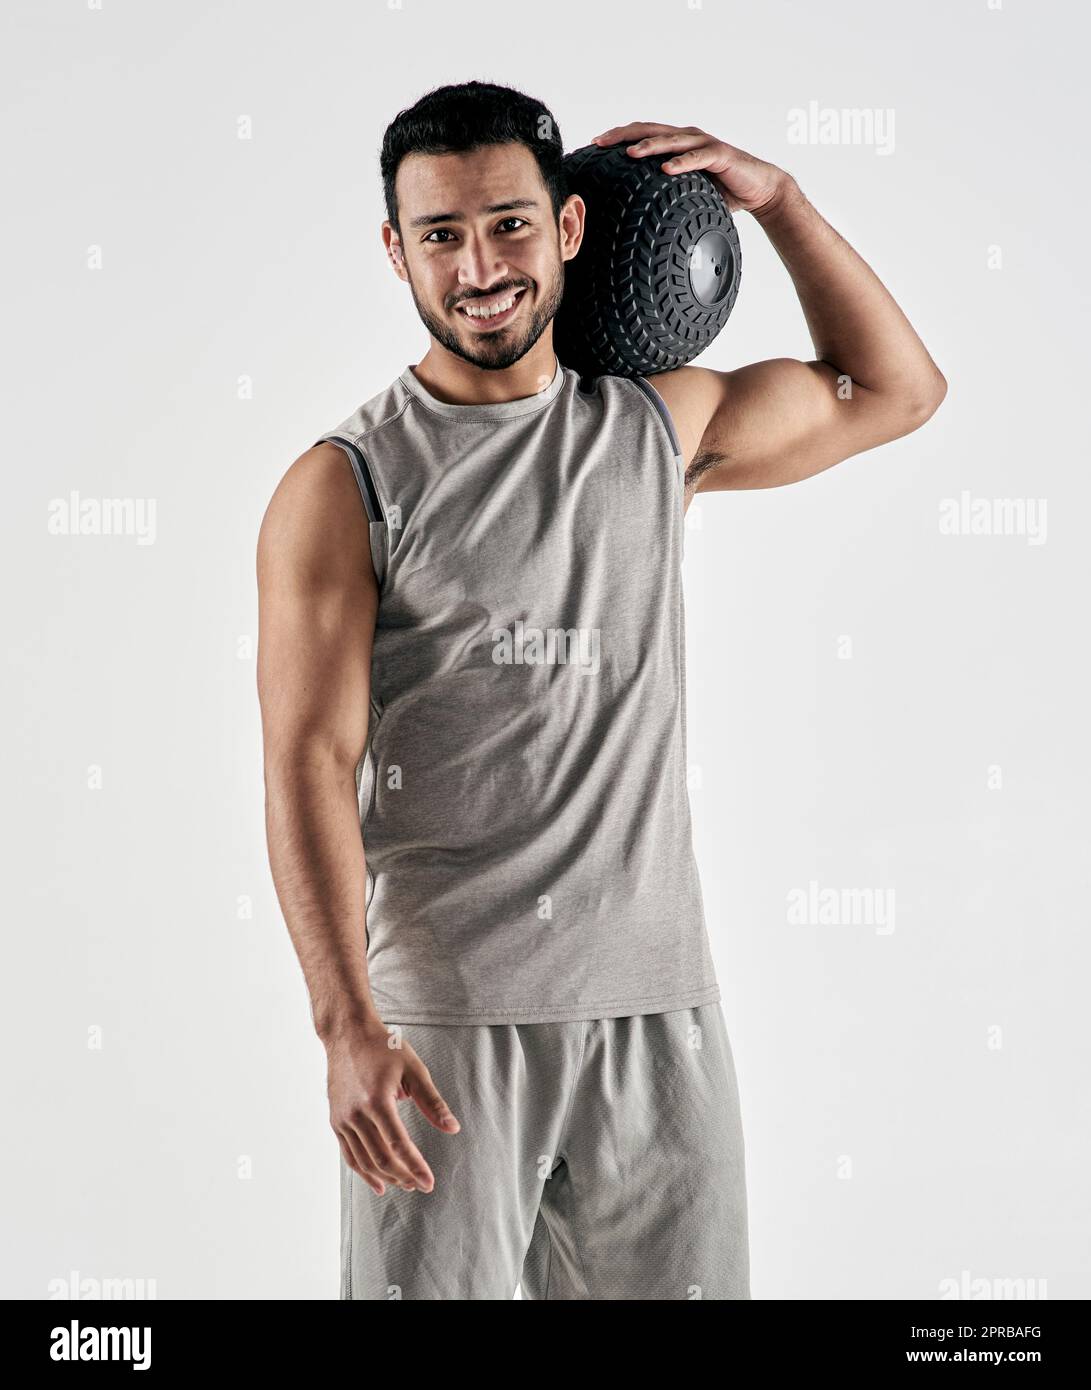 Sei stark, positiv und voller Bestie-Modus. Studioporträt eines muskulösen jungen Mannes, der einen Übungsball vor einem weißen Hintergrund hält. Stockfoto